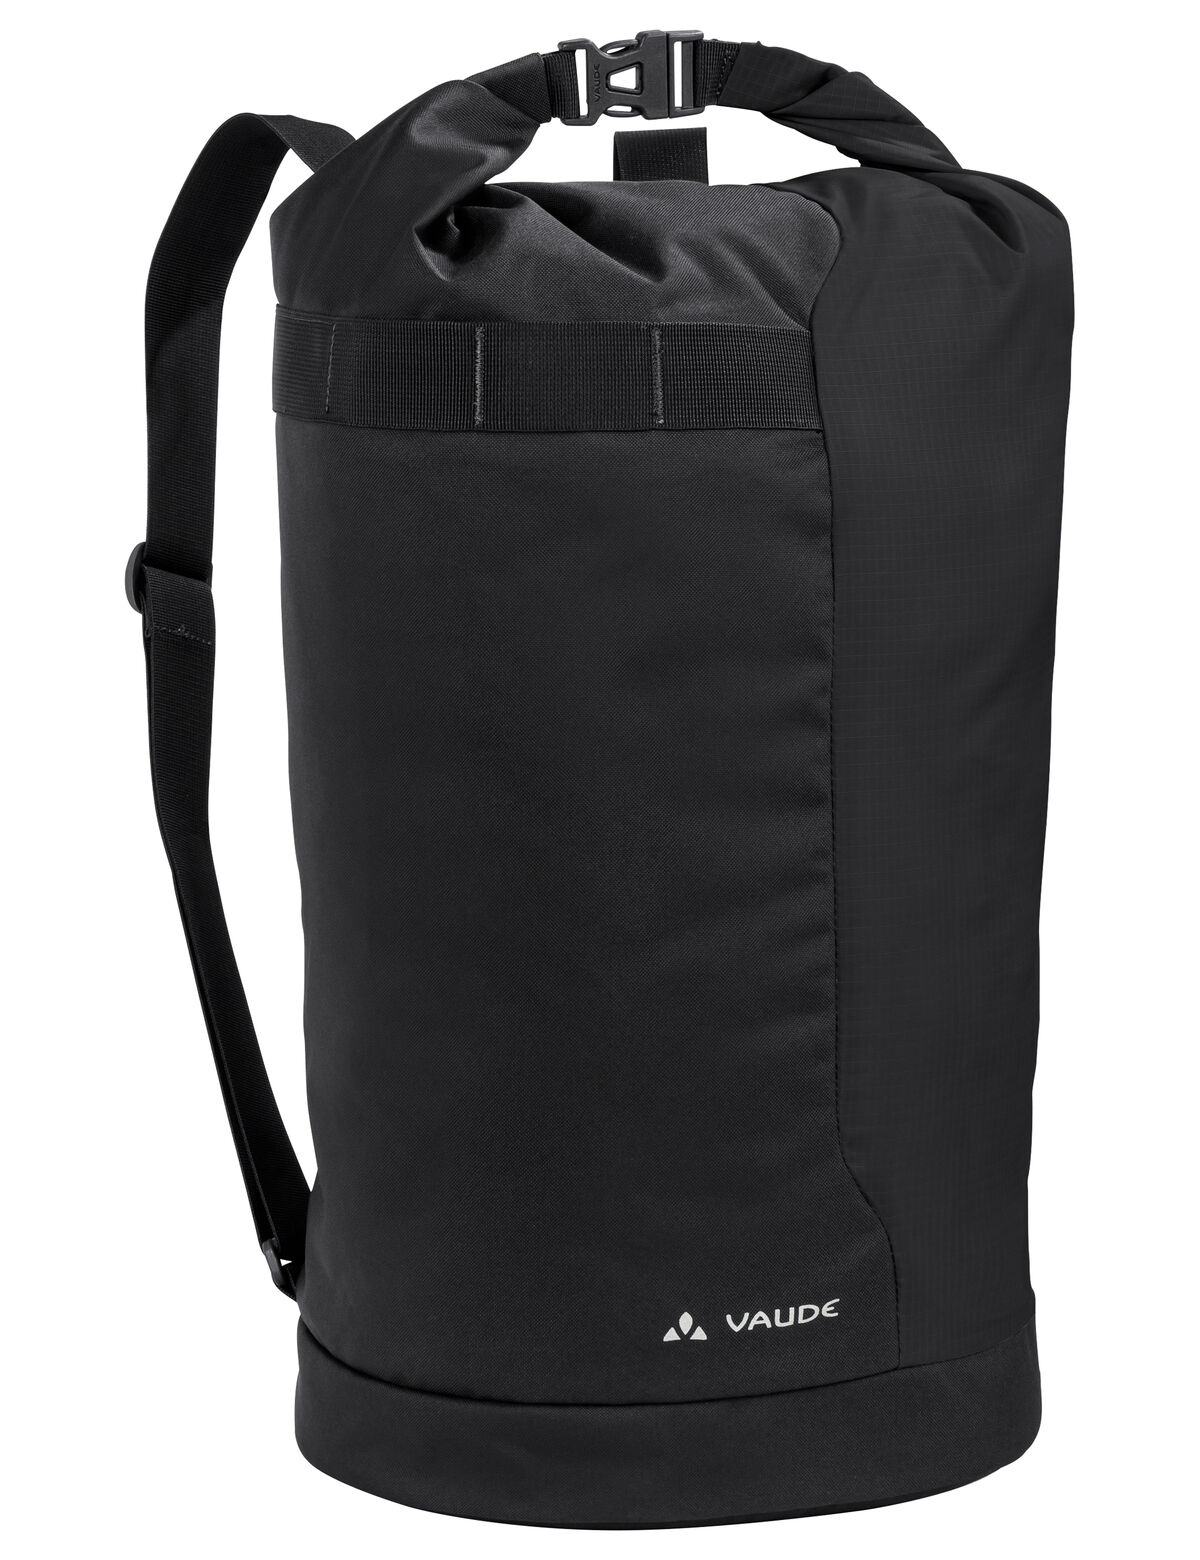 Vaude - Tecogo 30 - Backpack